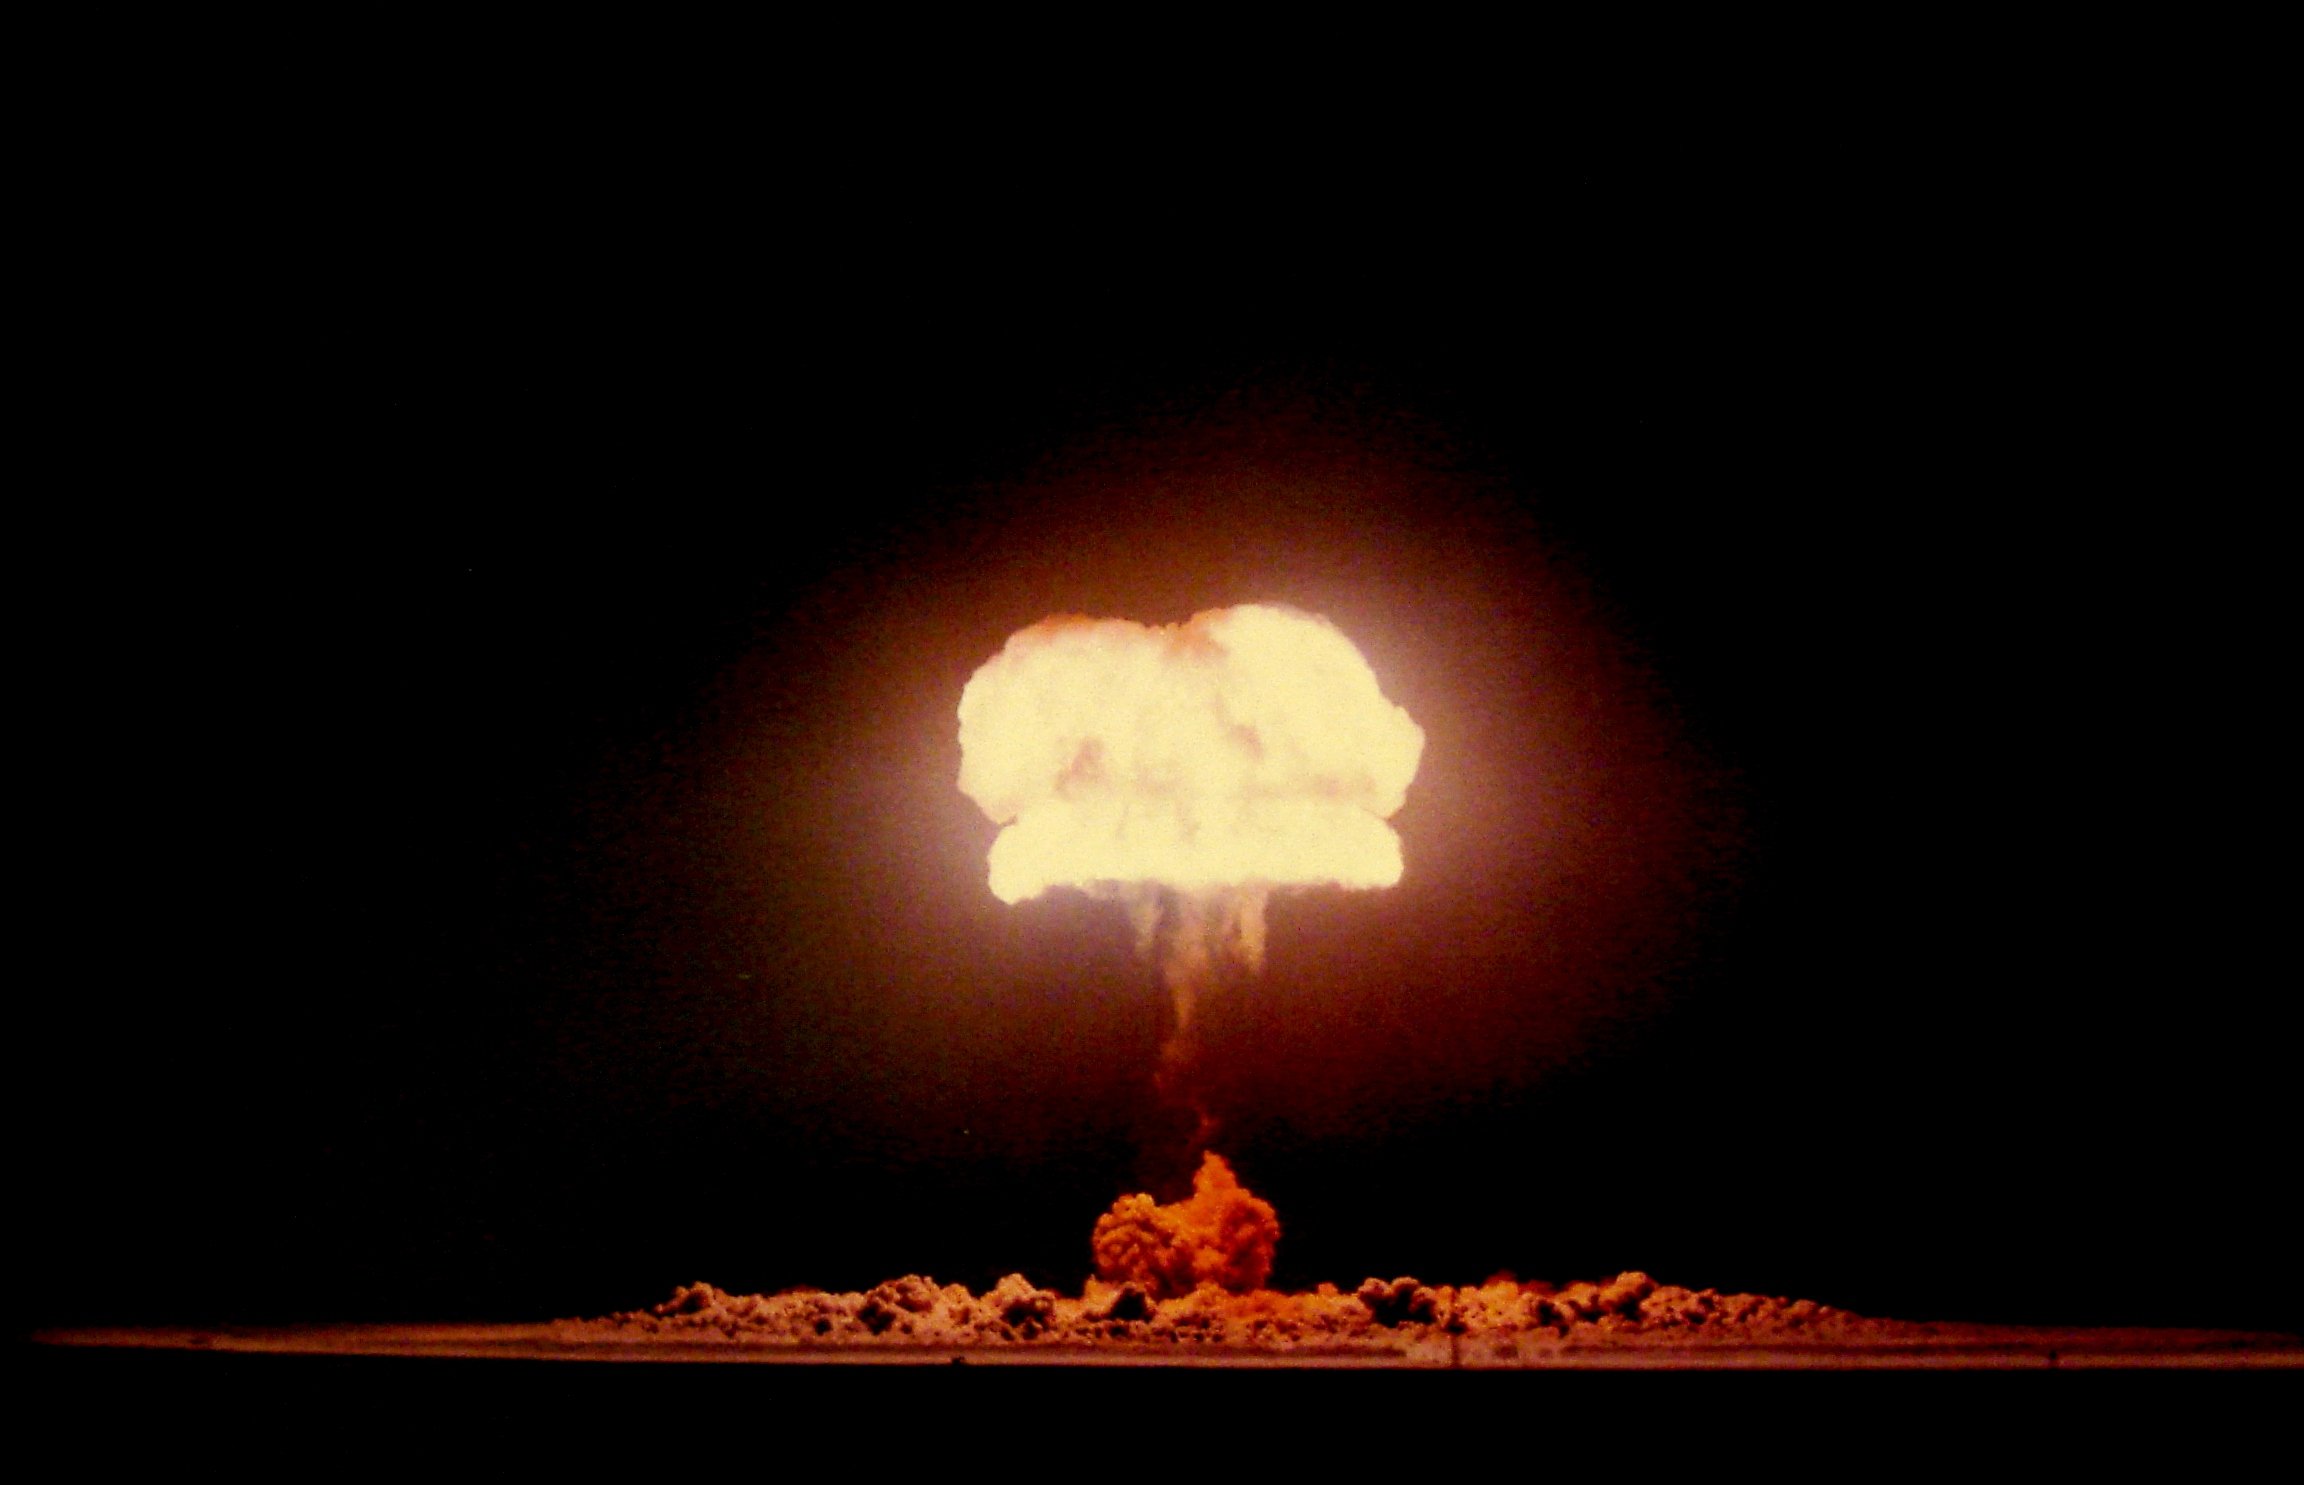 Территория ядерного взрыва. Ядерное оружие световое излучение. Световое излучение ядерного взрыва. Ядерный взрыв 40мт. Высотный взрыв ядерного оружия.